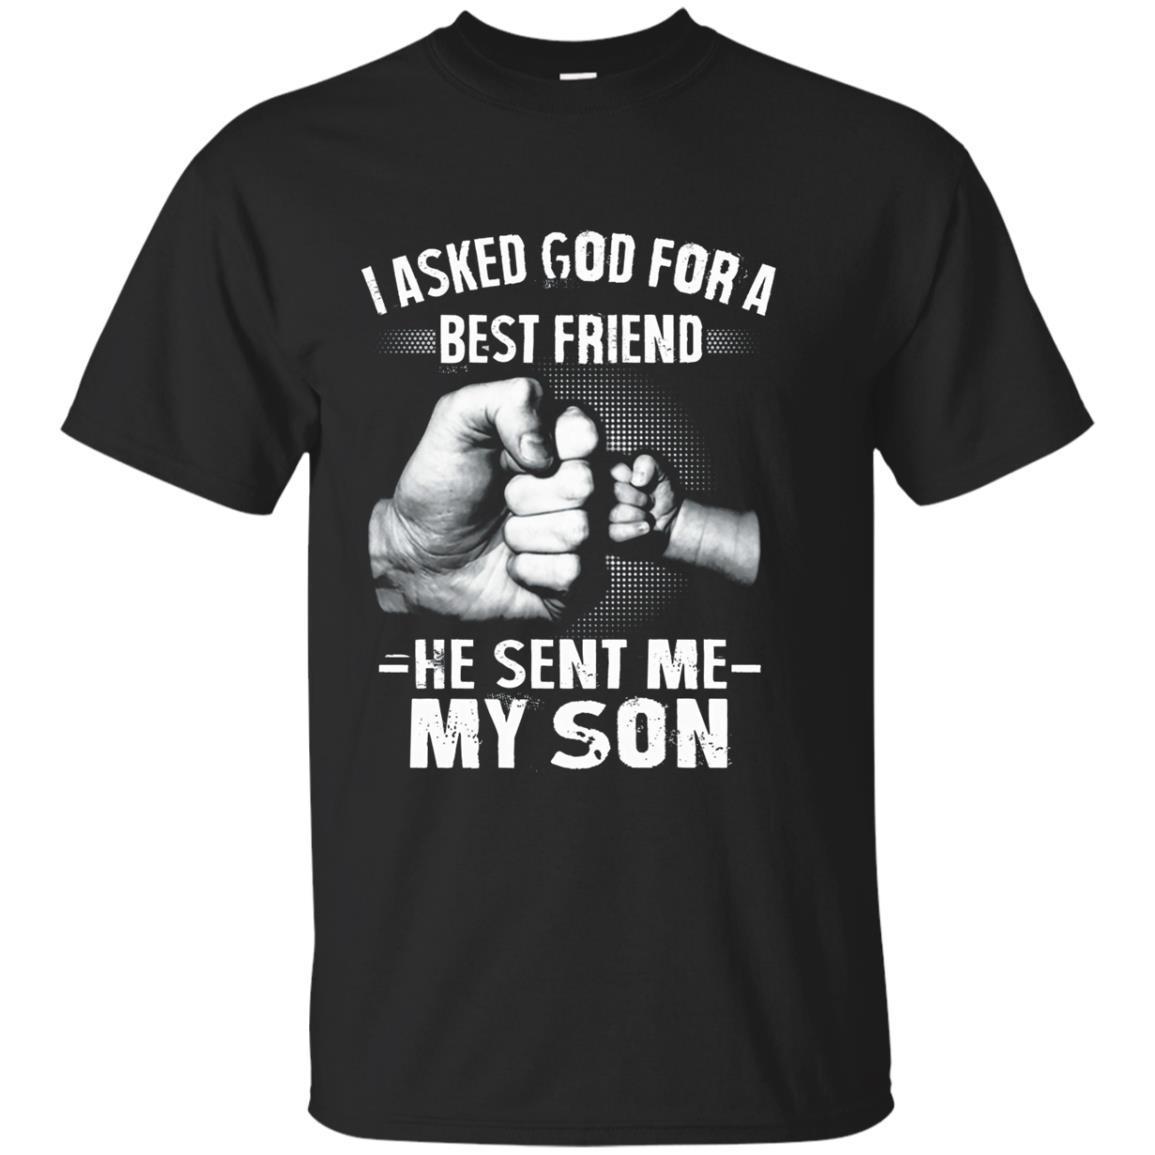 Best Friend, He Sent Me My Son Shirt T-shirt - Amyna